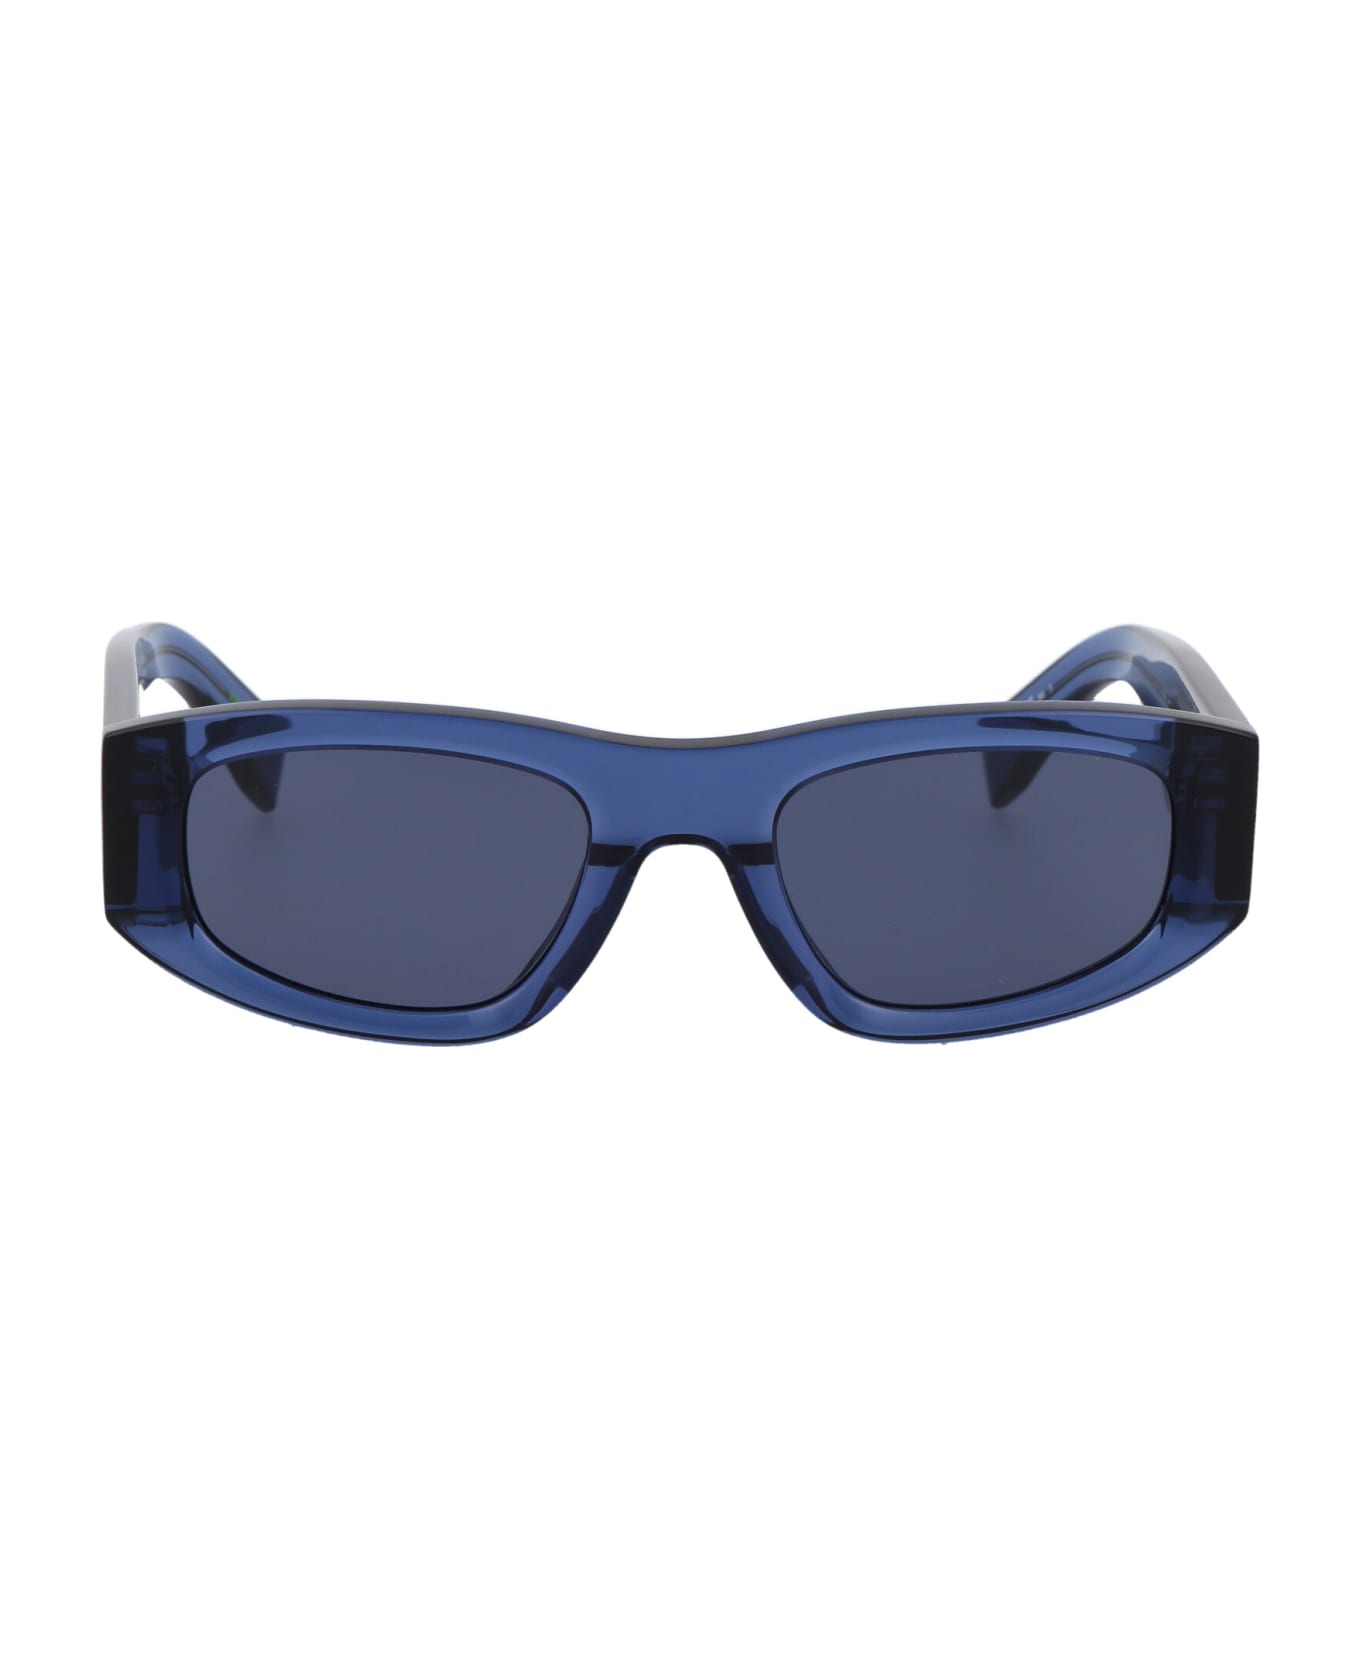 Tommy Hilfiger Tj 0087/s Sunglasses - PJPKU BLUE